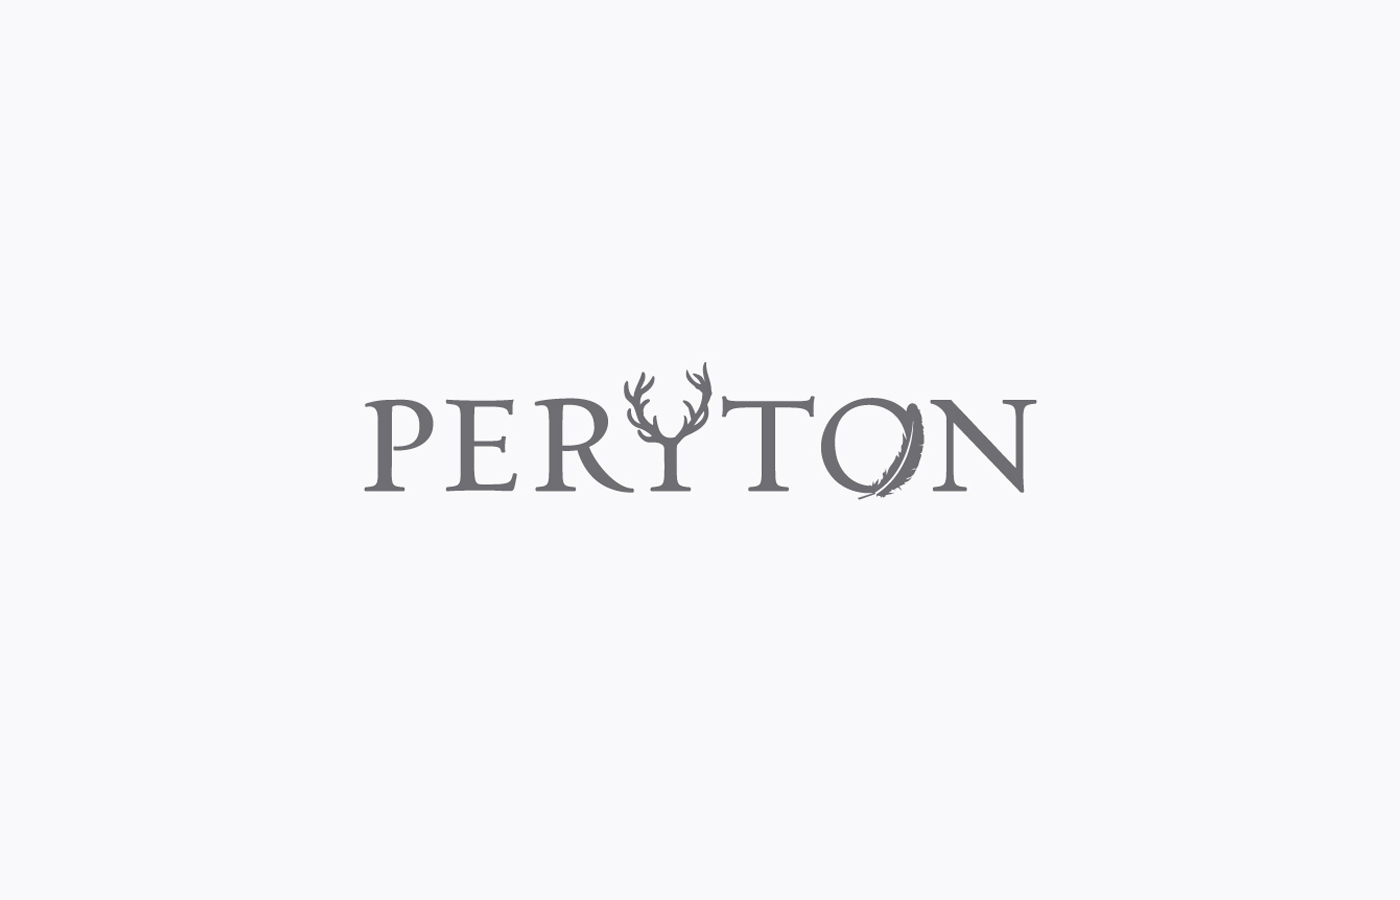 peryton antler feather logo